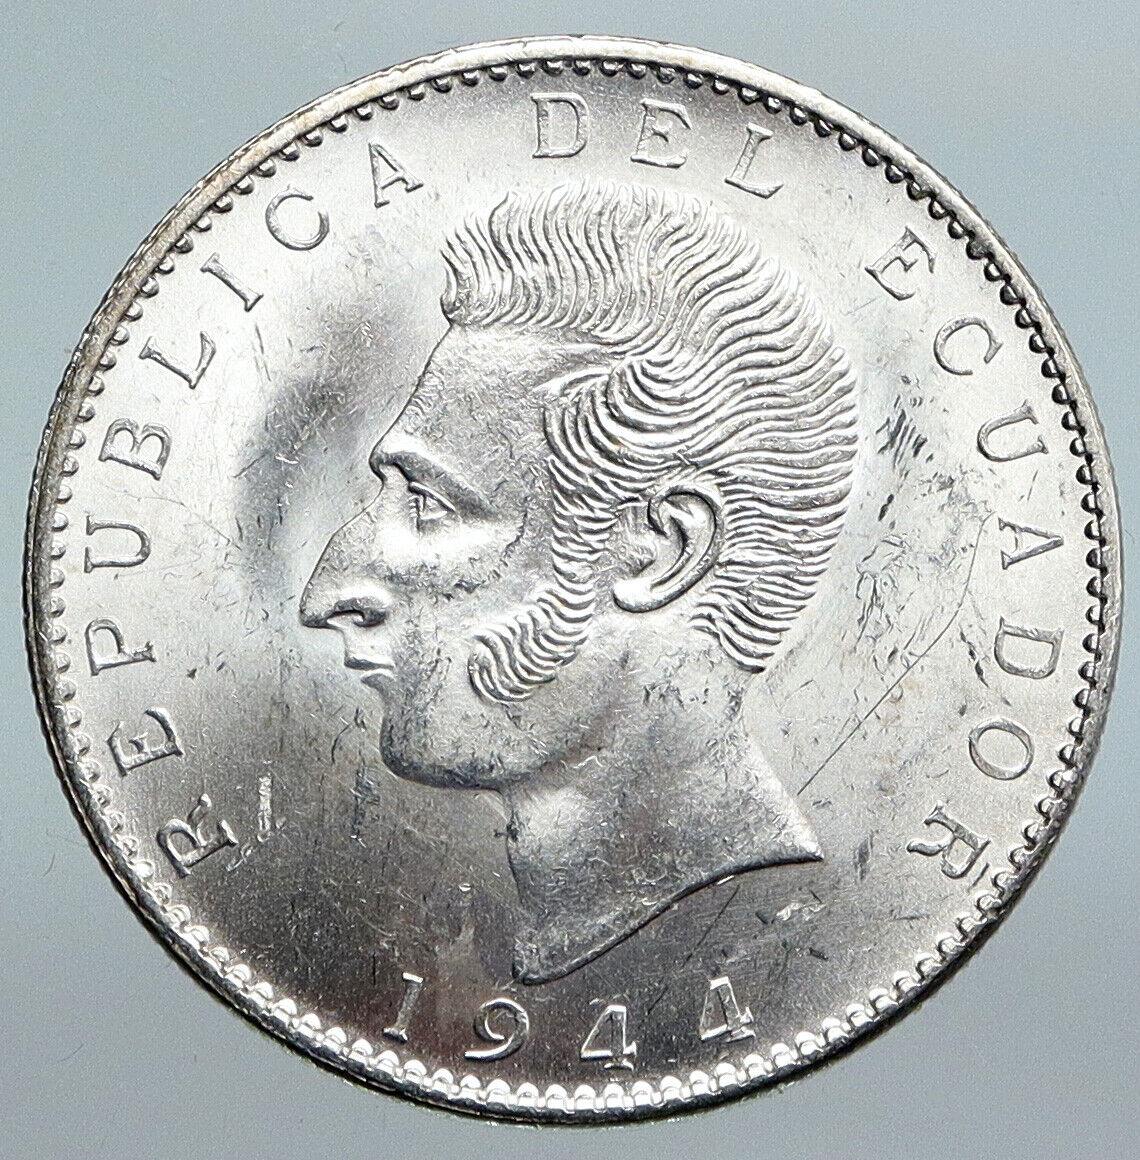 1944 ECUADOR Antonio Jose de Sucre y Alcala VINTAGE Silver 2 Sucres Coin i89989